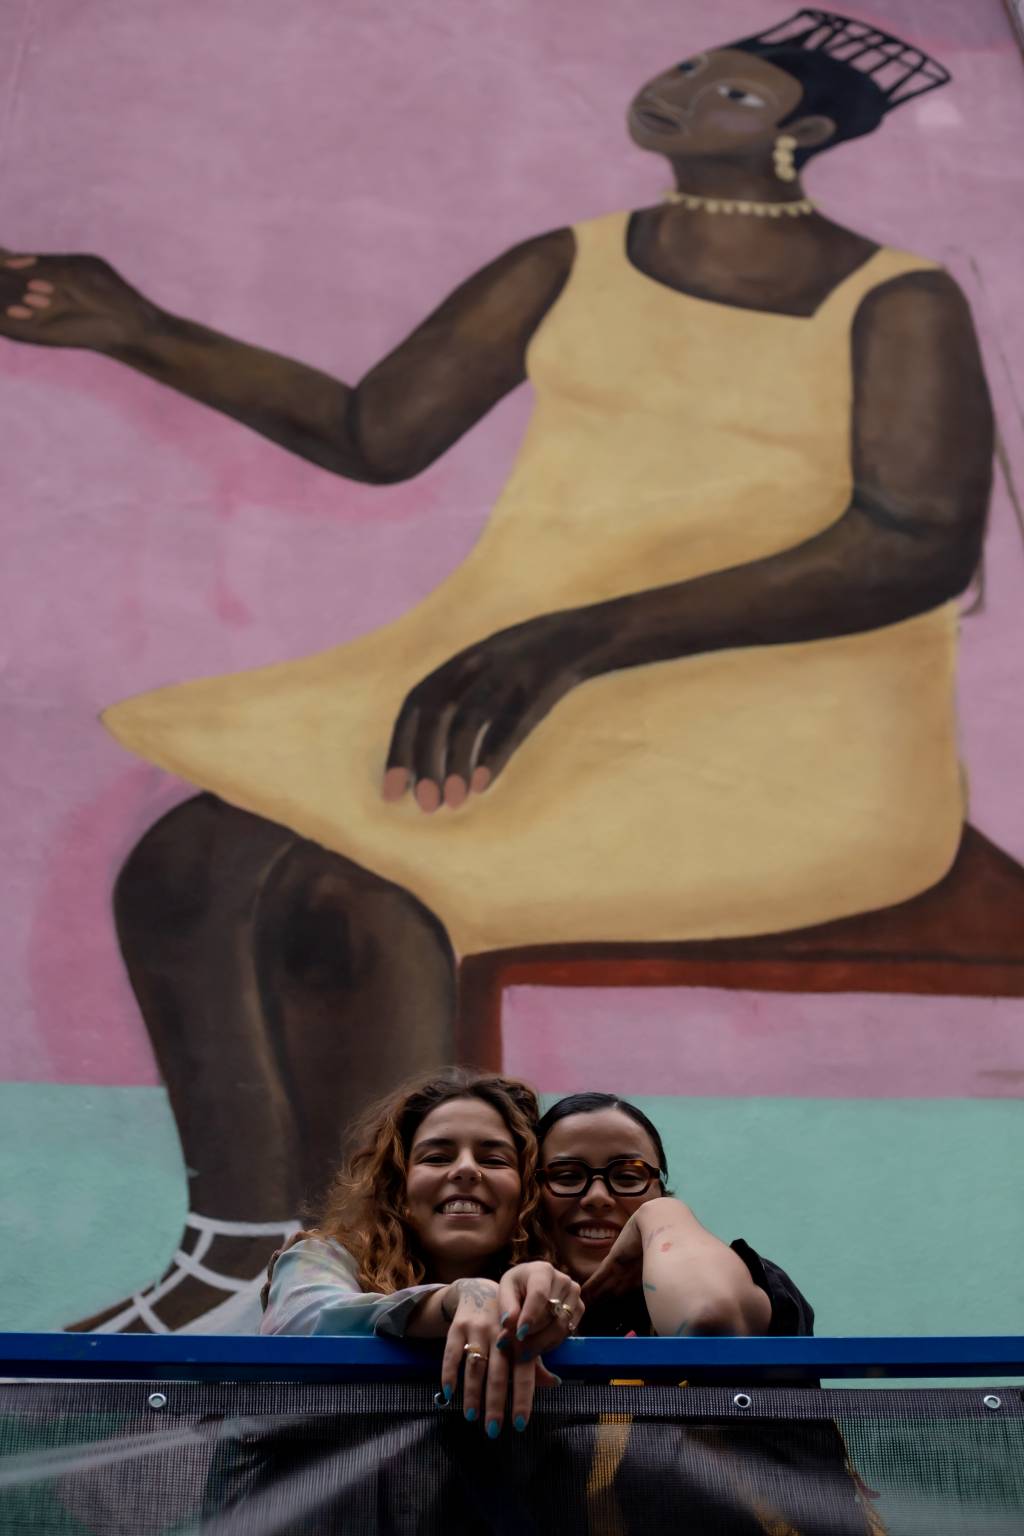 Larissa de Souza e Pam Araújo posam lado a lado em frente a grande mural com pintura de mulher negra sentada com vestido amarelo.